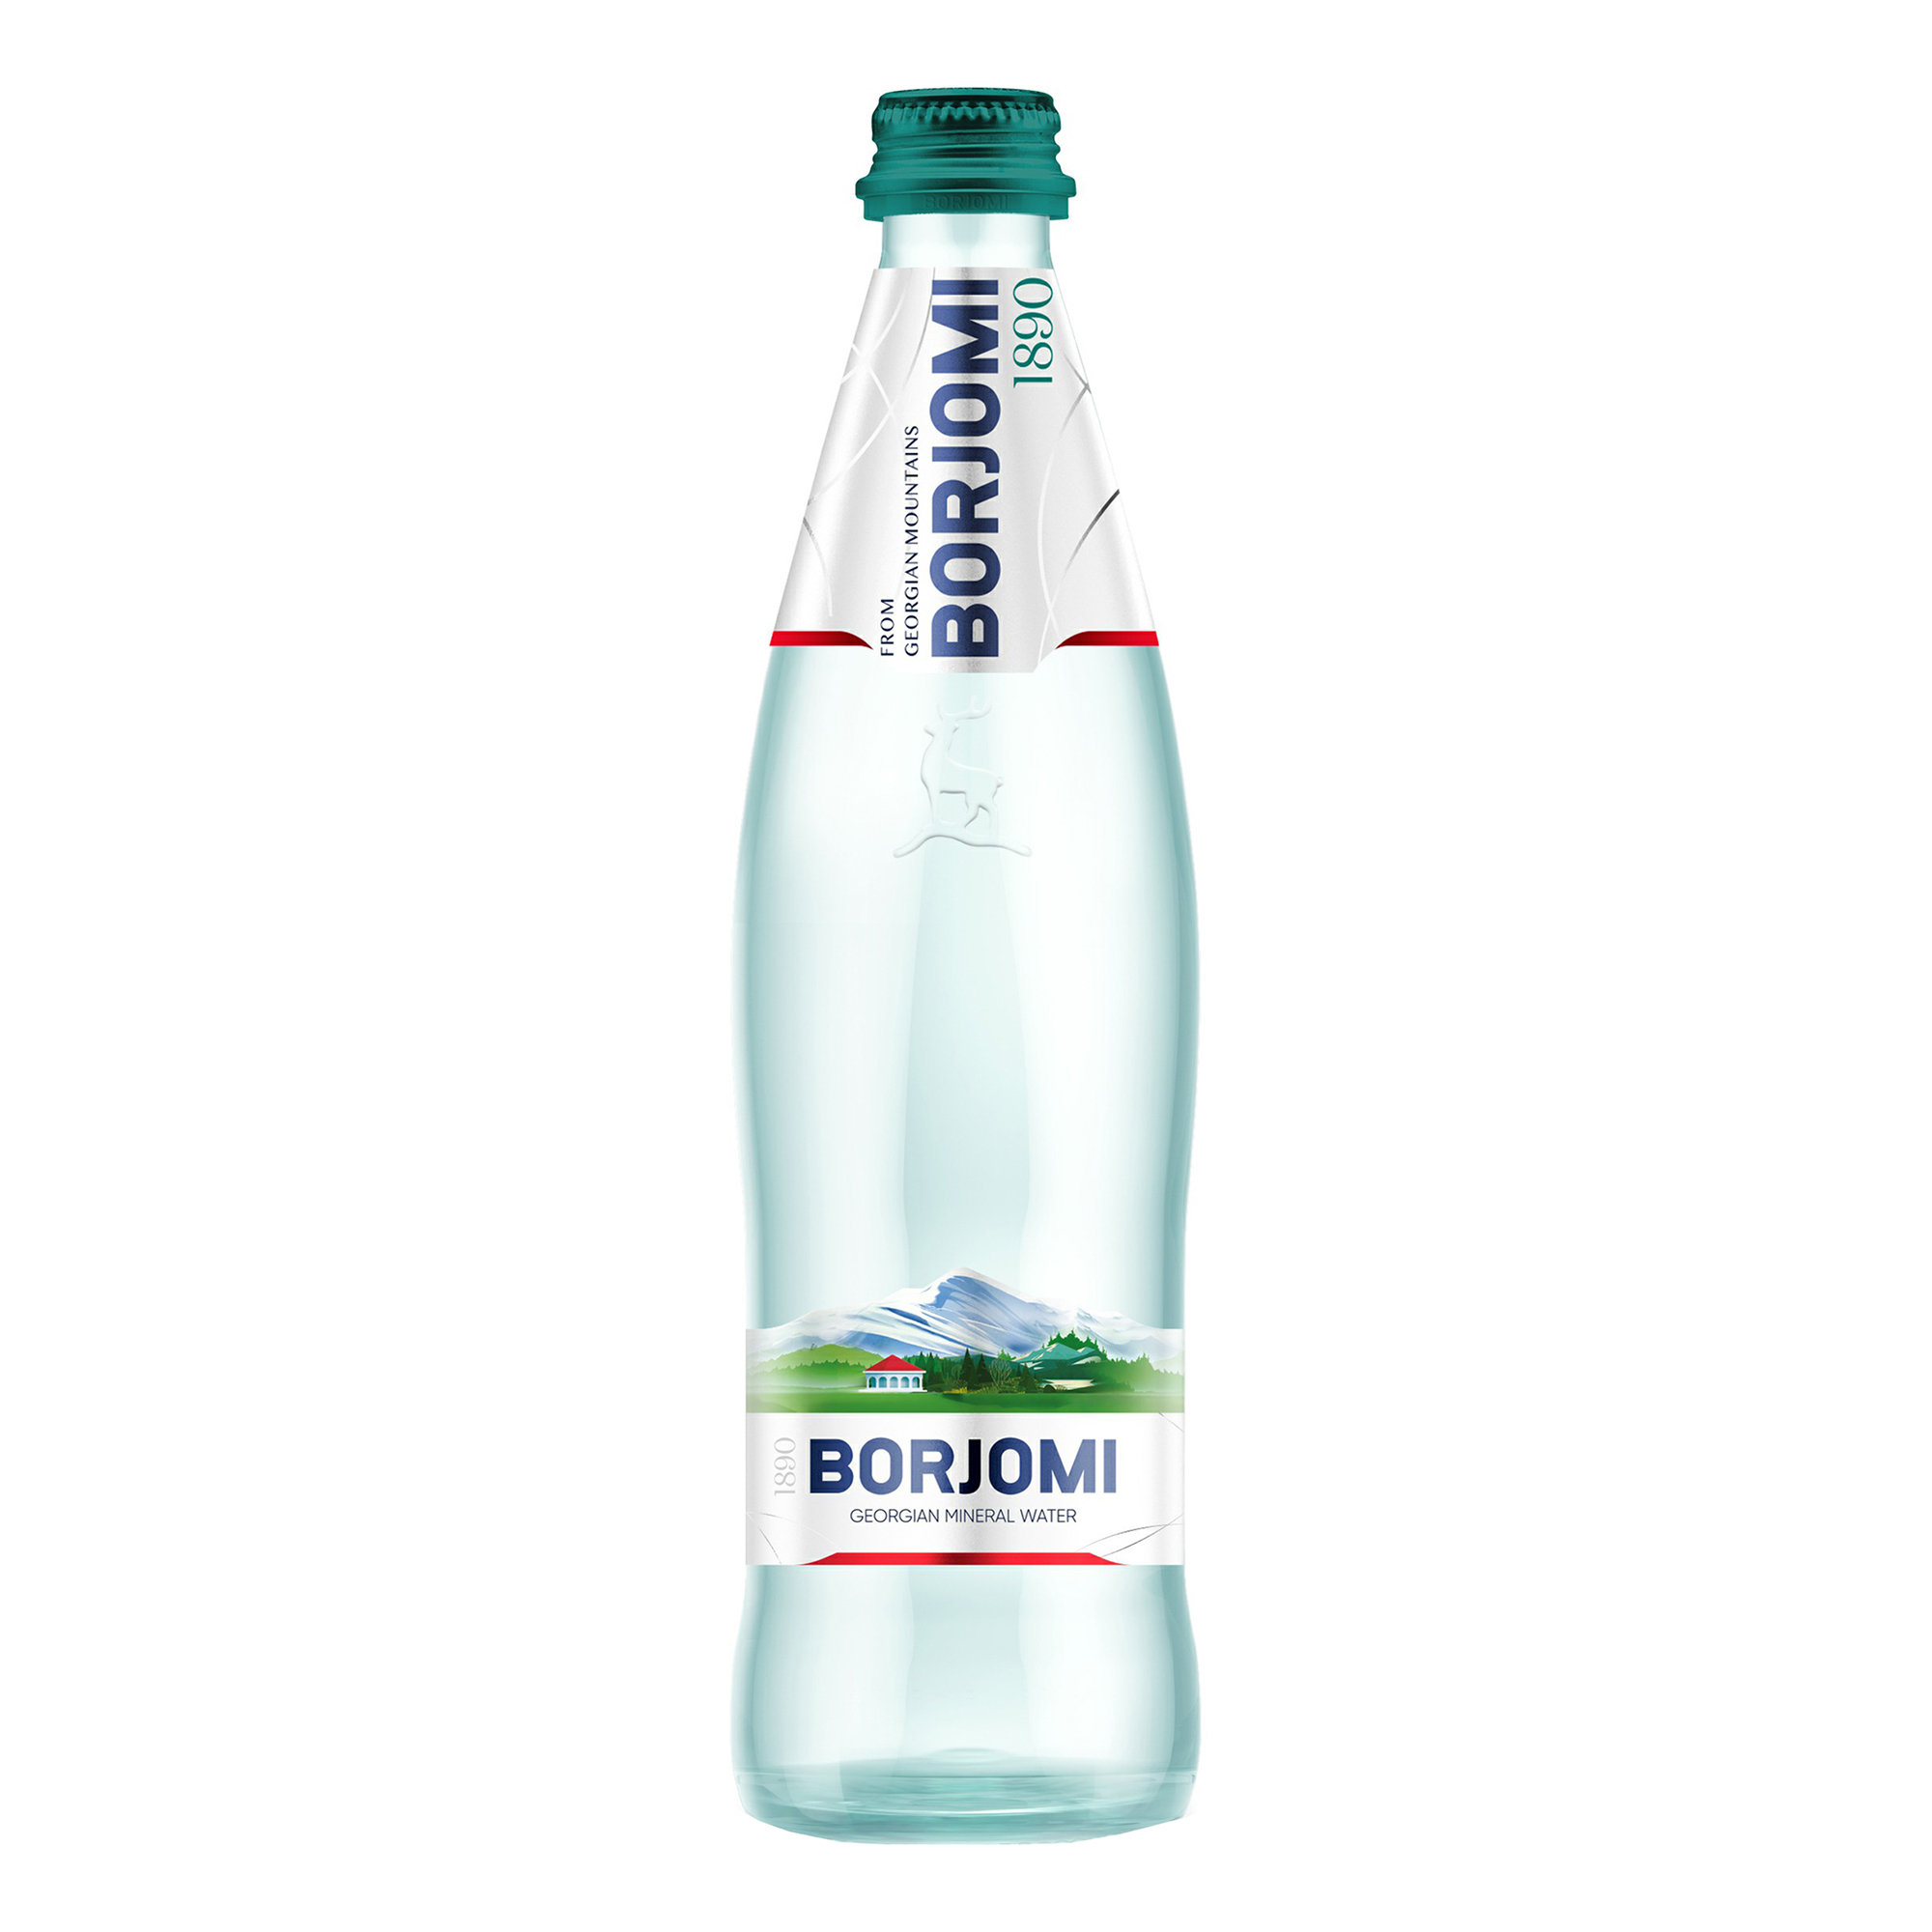 Вода минеральная газированная Borjomi 0,5 л стеклянная бутылка